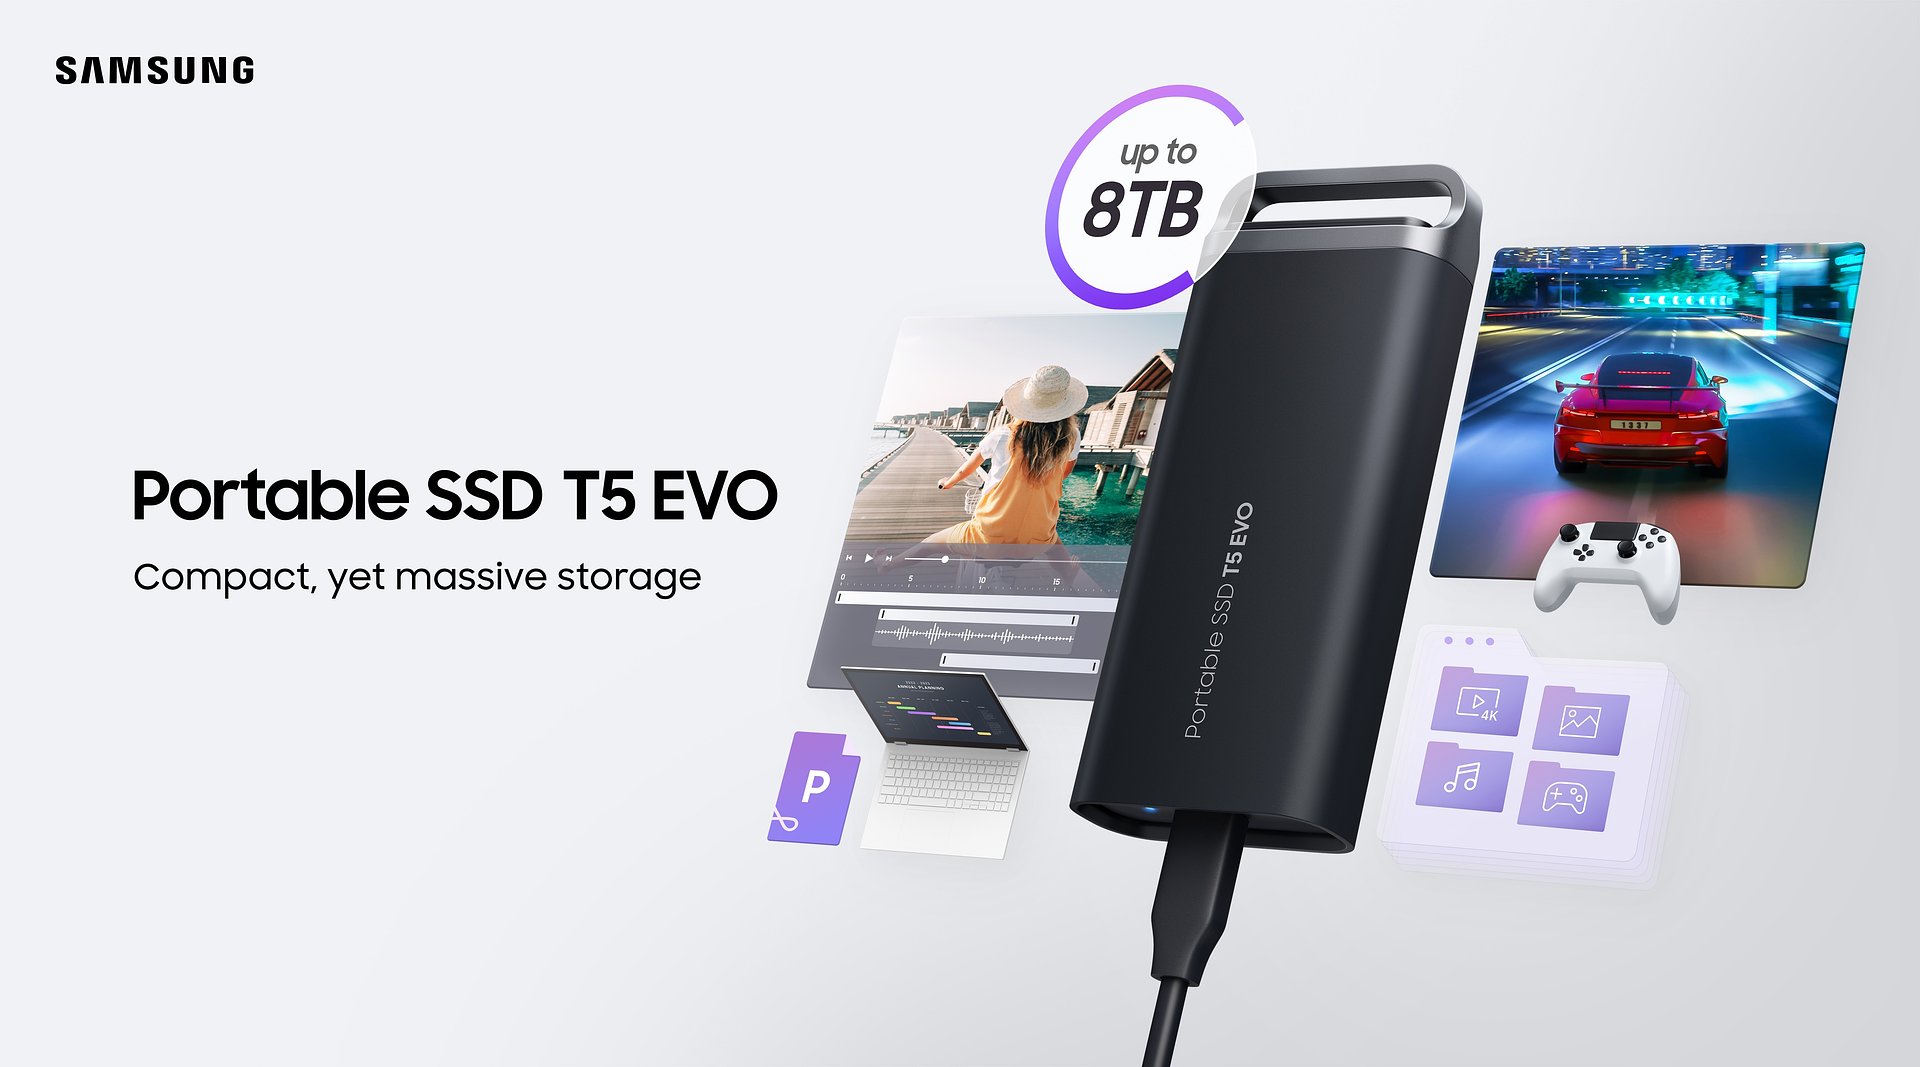 Samsung prezintă noul SSD portabil T5 EVO cu o capacitate de 8 TB și design compact